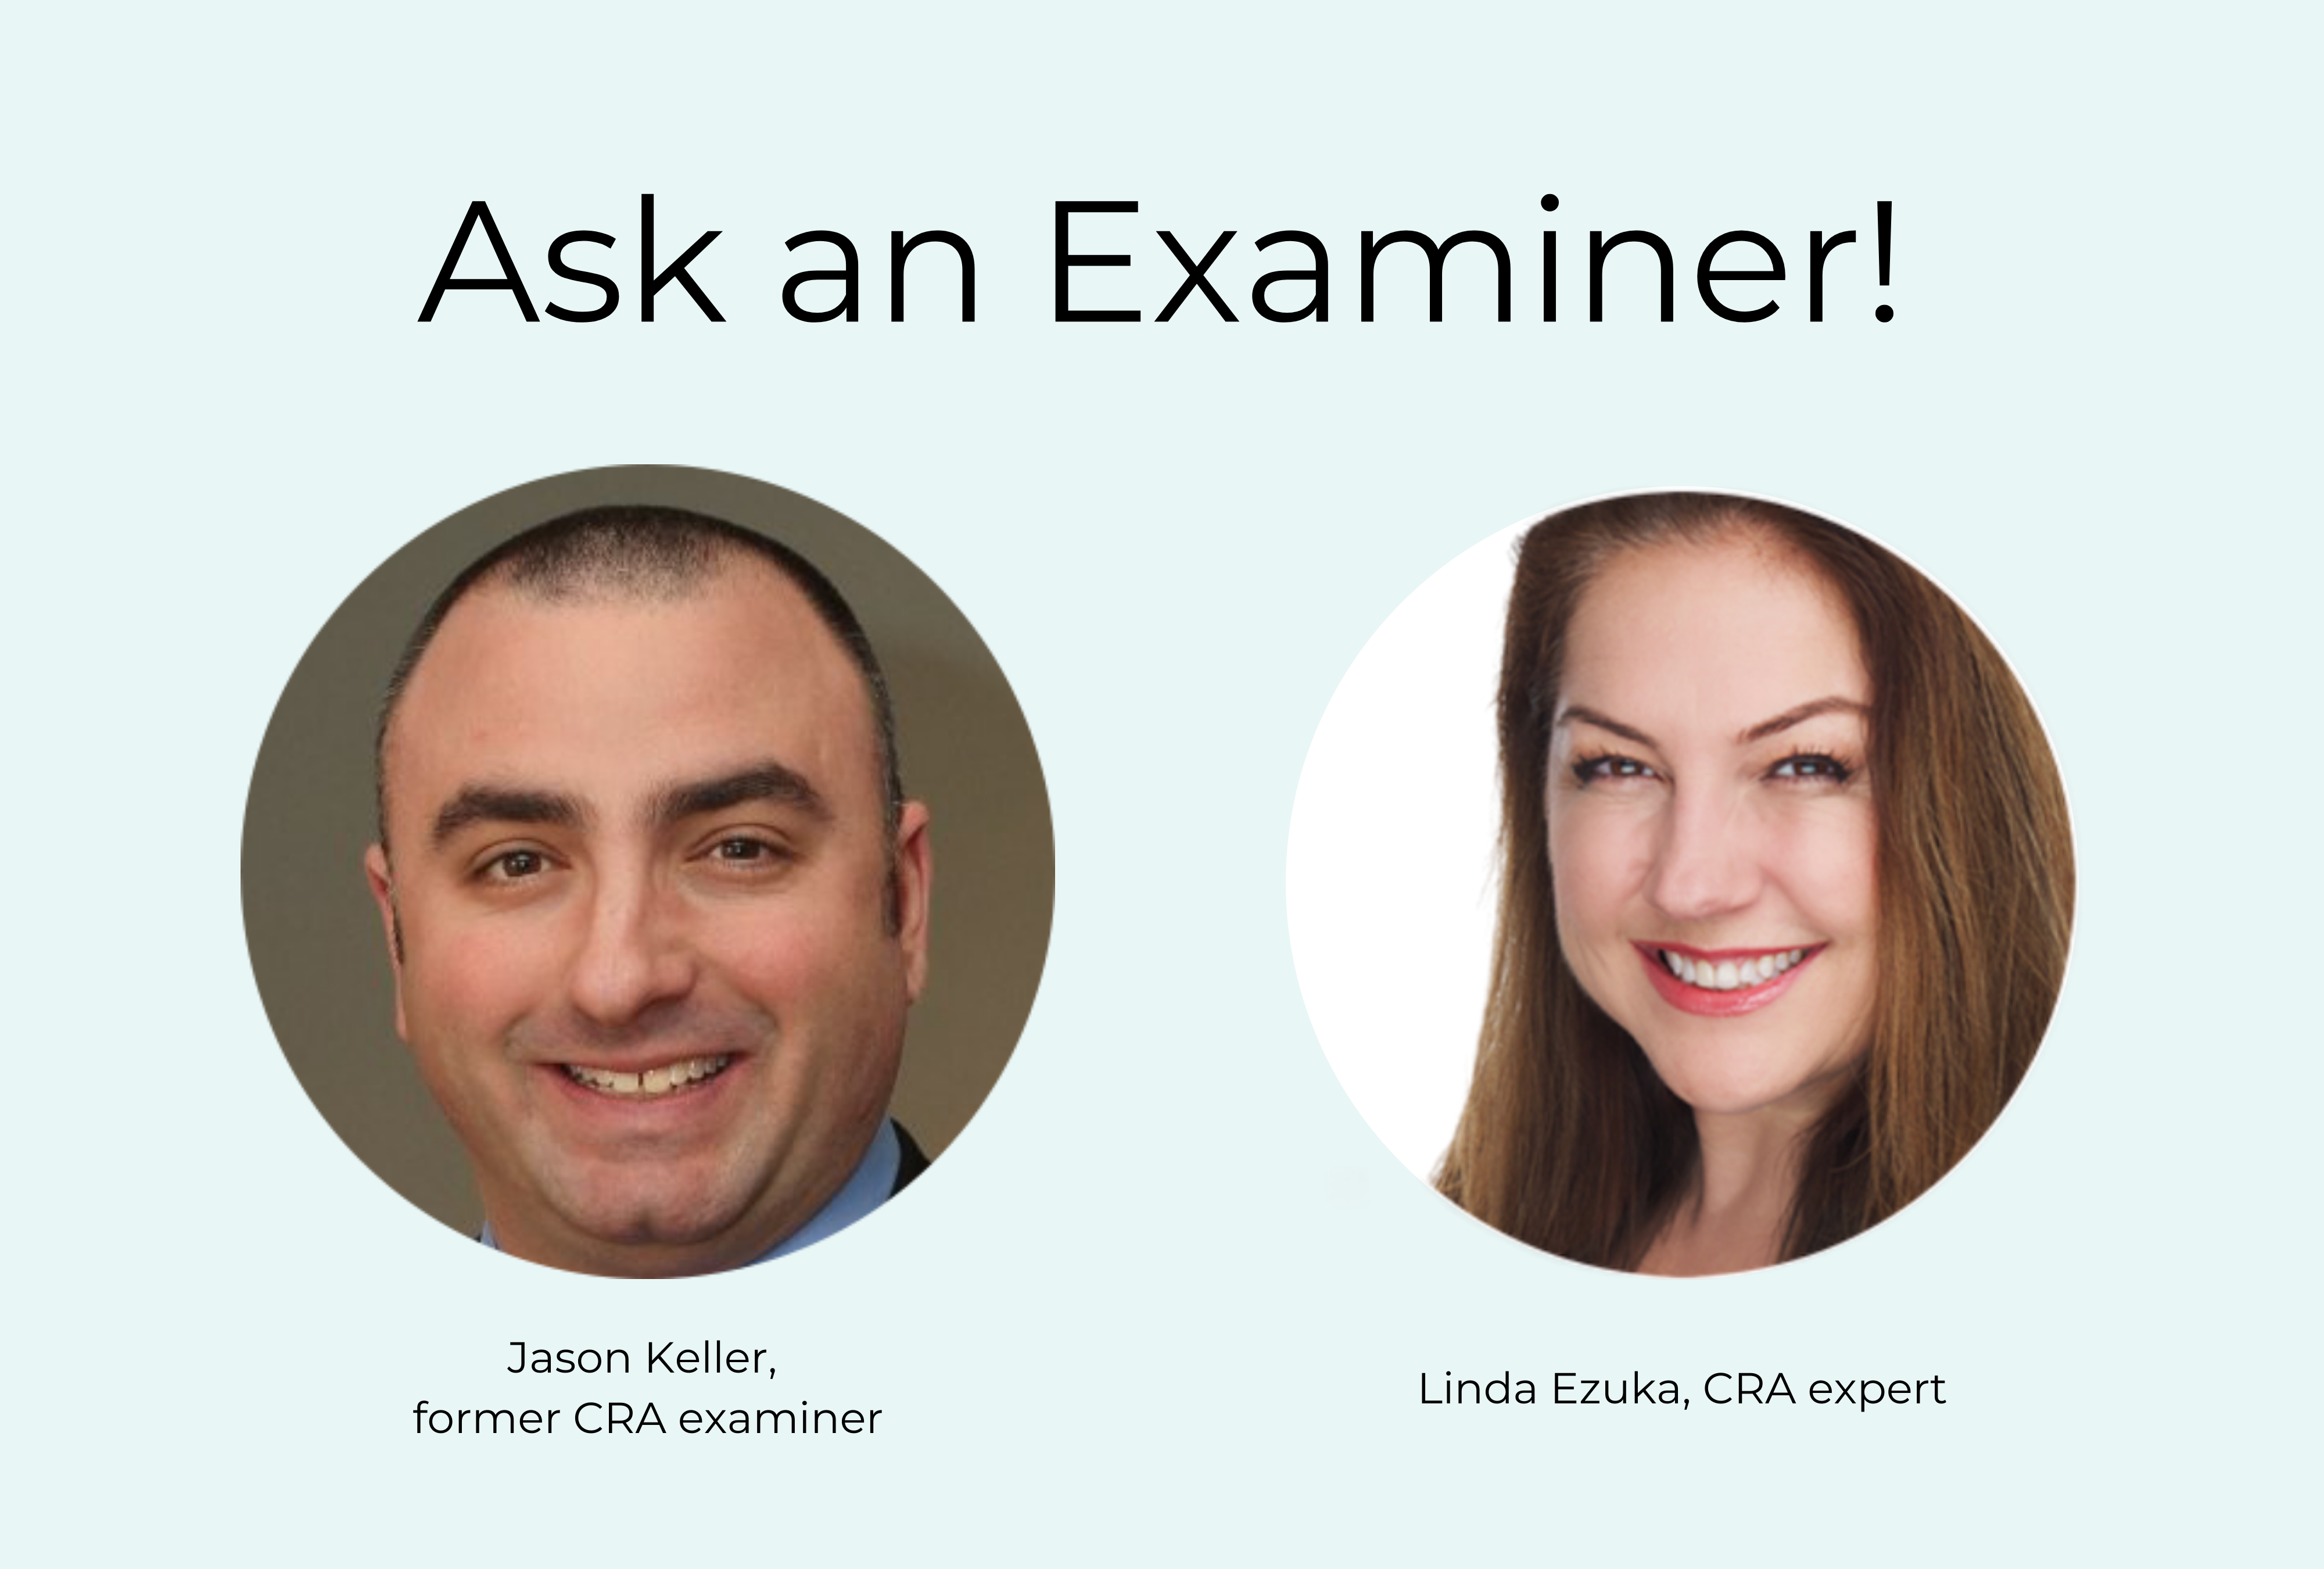 Linda Ezuka and Jason Keller share how to prepare for your next CRA exam